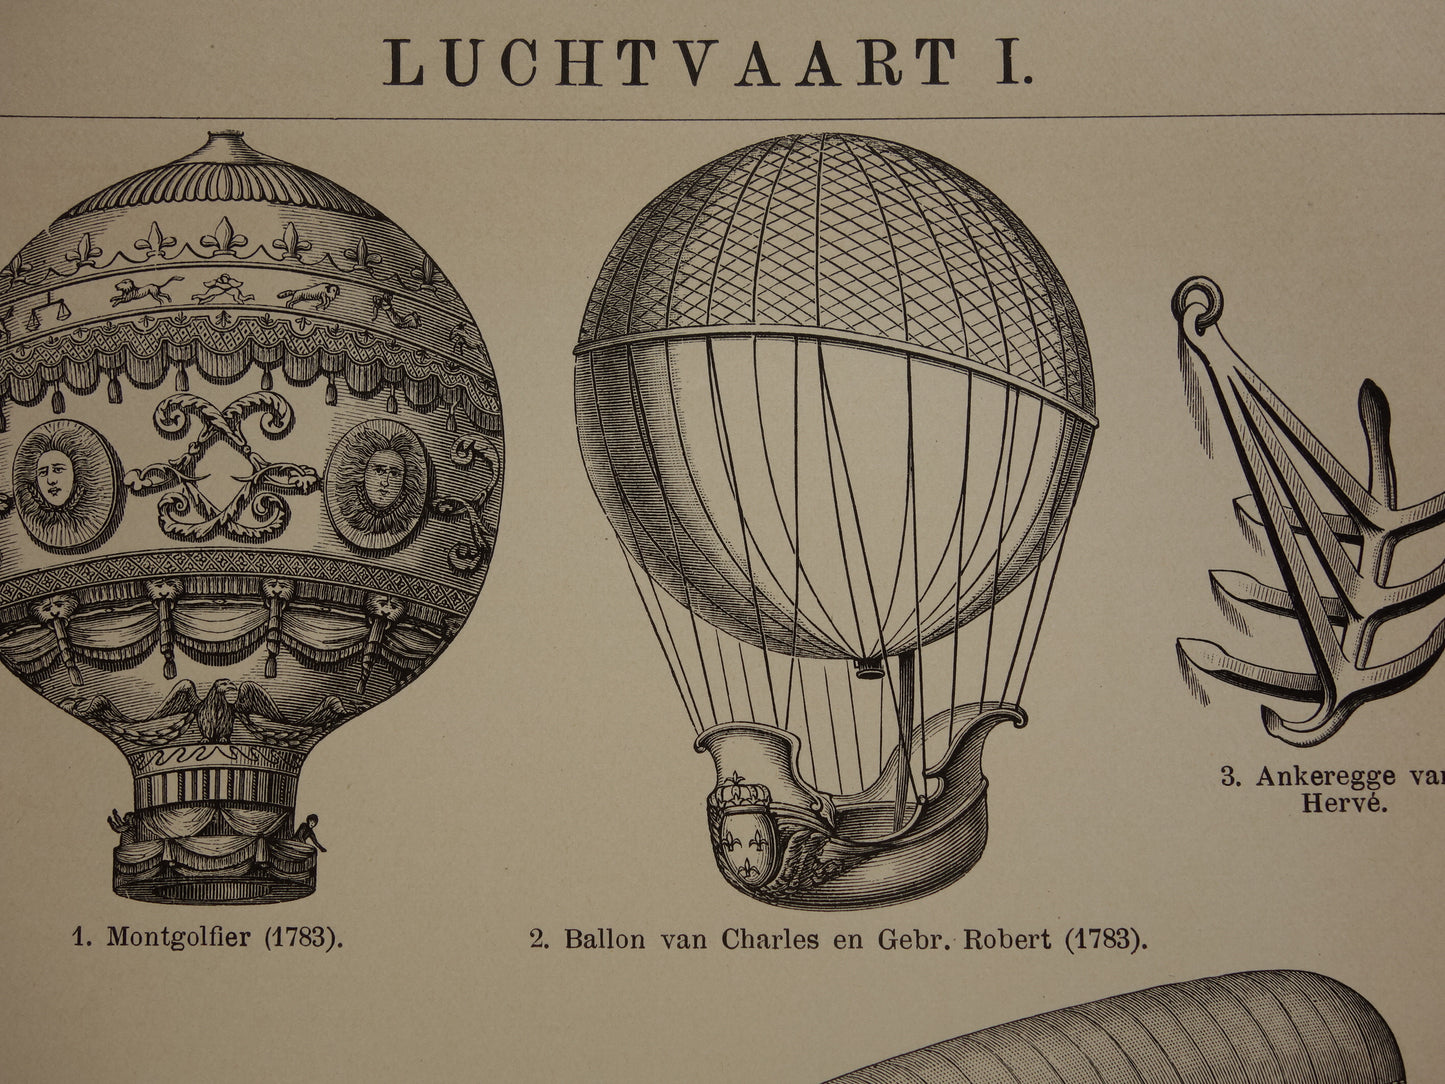 LUCHTVAART kleine antieke illustratie uit het jaar 1909 over luchtballon Montgolfier vliegtuig Tatin Lebaudy luchtschip originele oude print